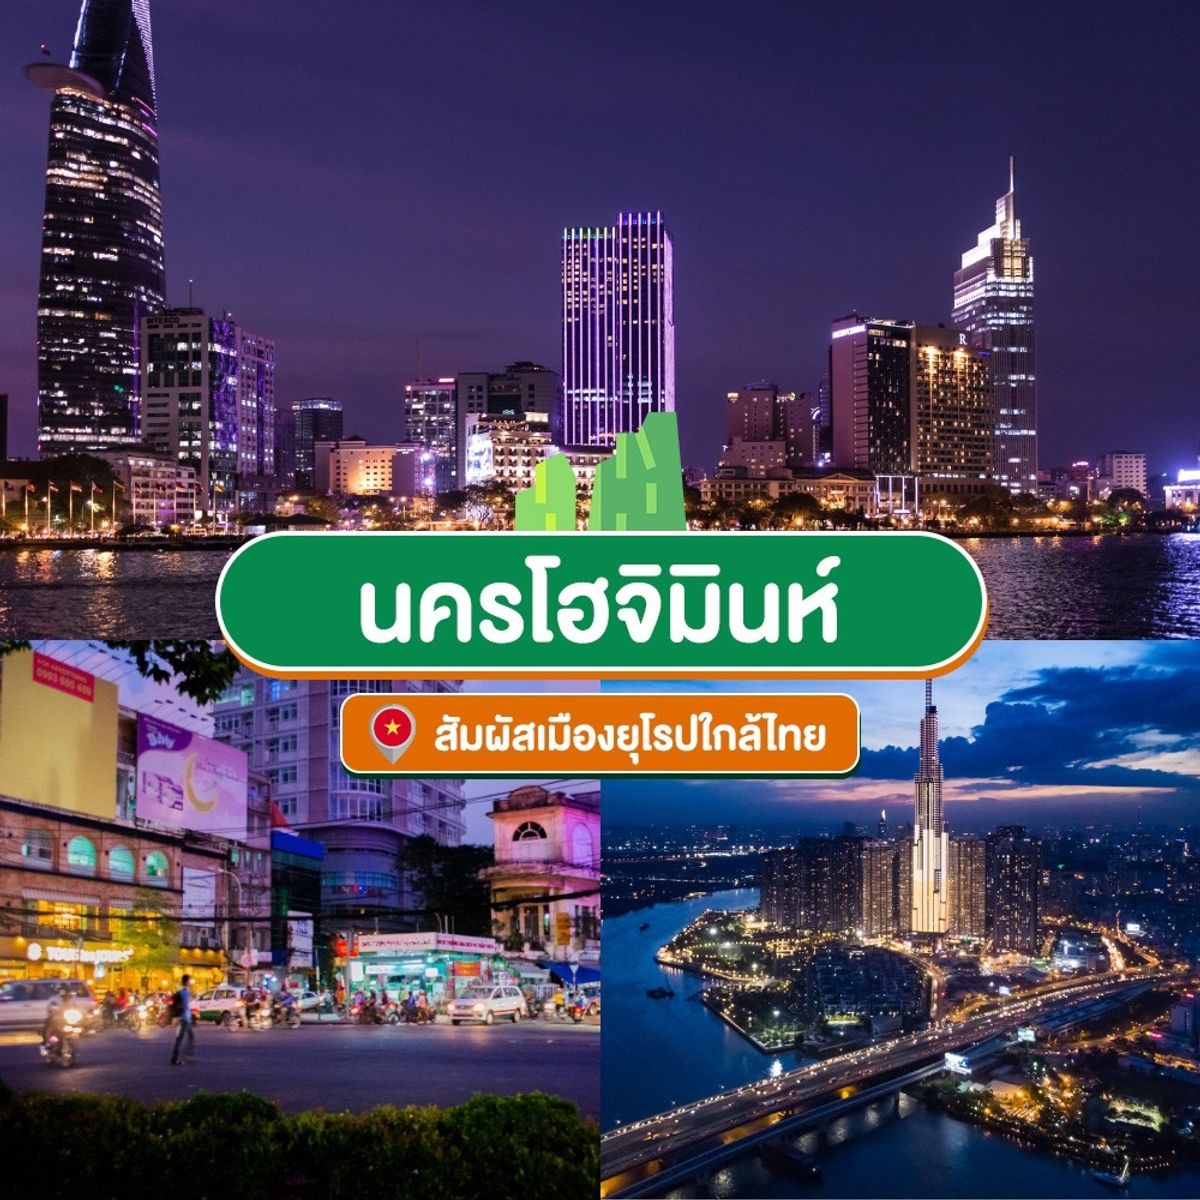 เช็คอิน 20 ที่เที่ยวเวียดนาม ใกล้ไทยถูกใจสายเที่ยวงบน้อย กรกฎาคม 2023 -  Sale Here